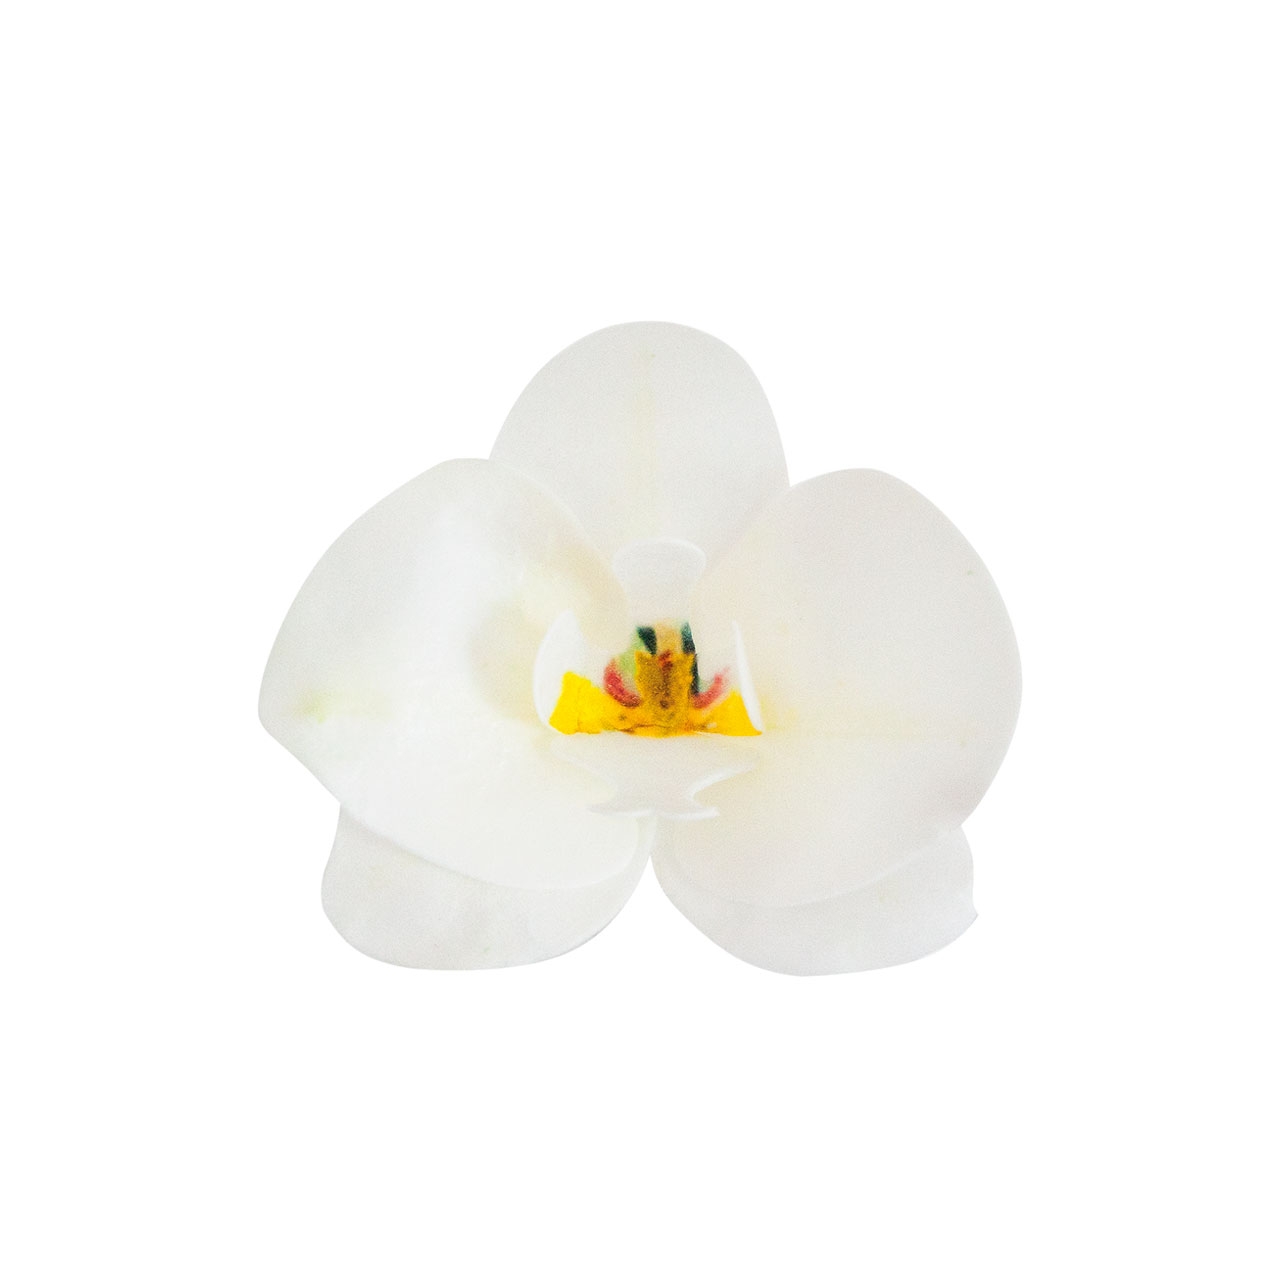 10 x Wafer Orchidee - Weiss - 8,5x7,5 cm (Waferdeko / Oblaten Blume) - Dekora